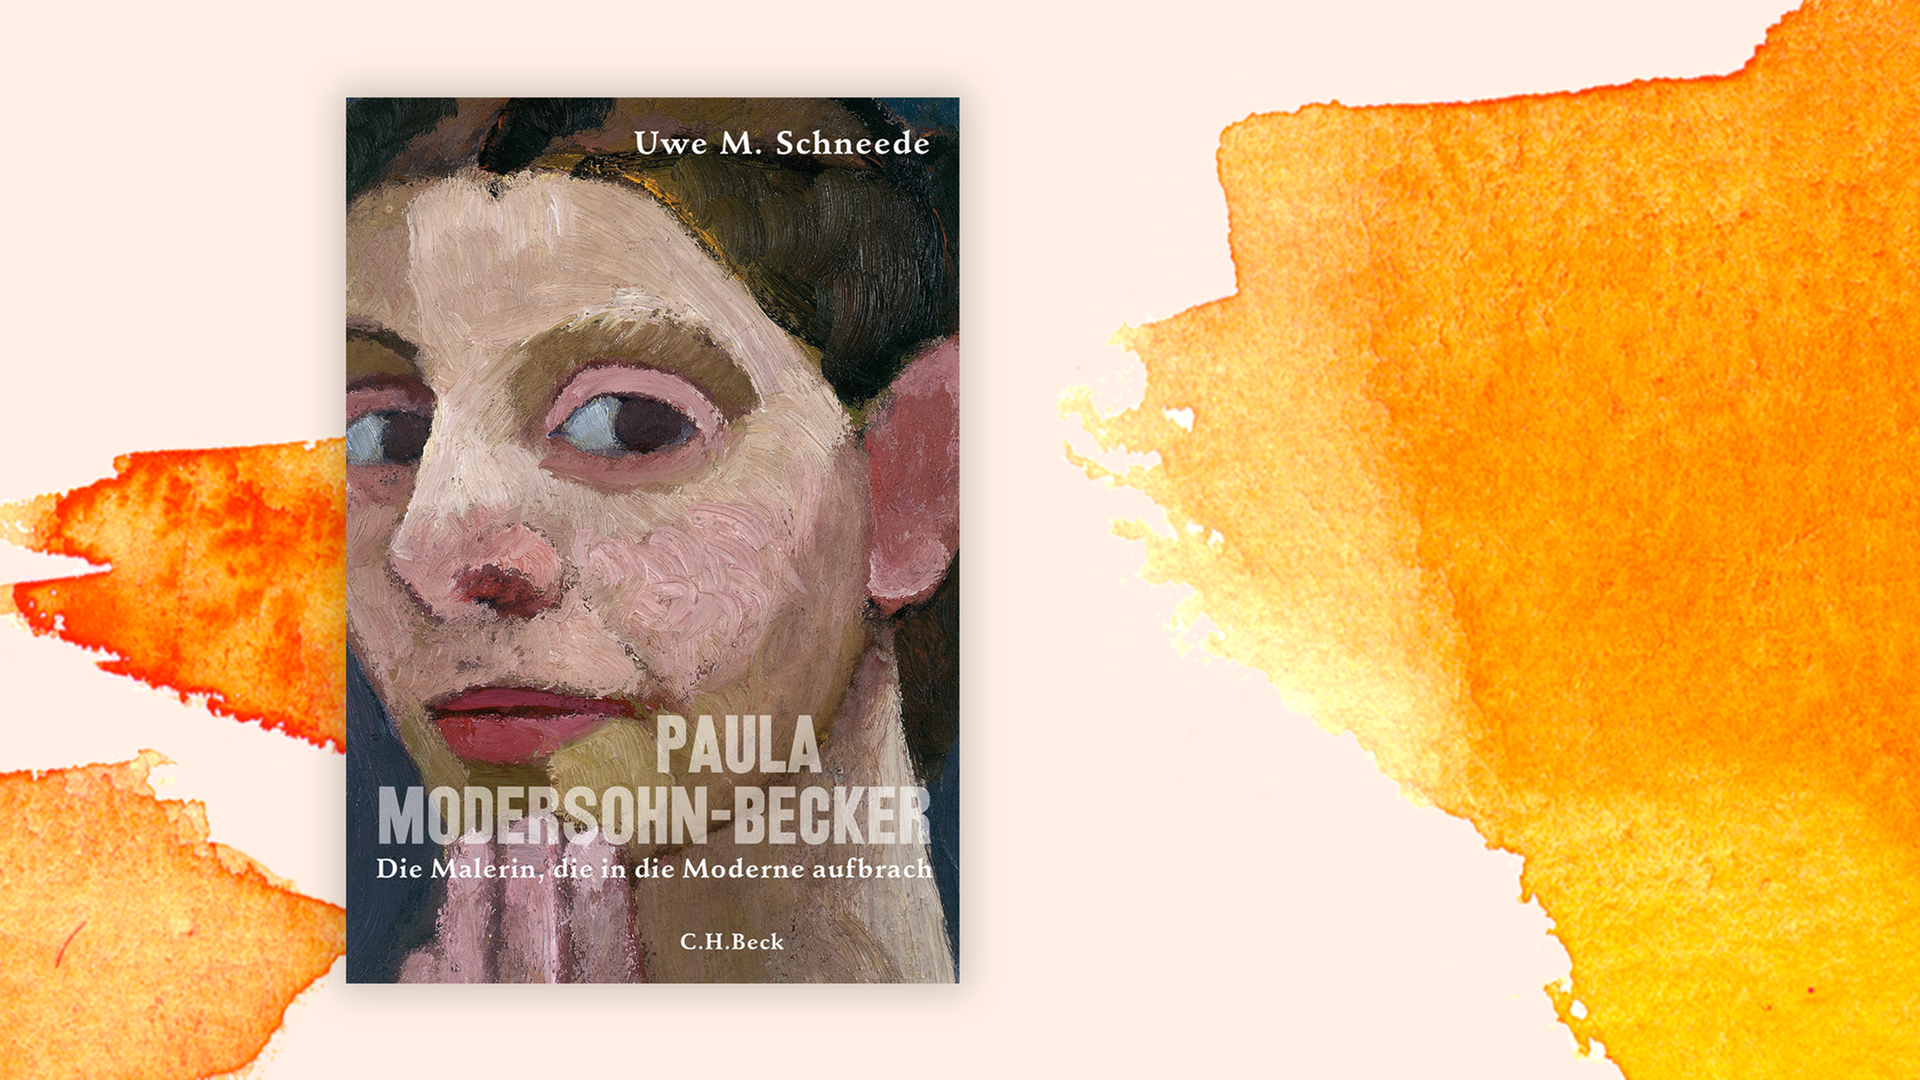 Zu sehen ist das Cover des Buches "Paula Modersohn-Becker. Die Malerin, die in die Moderne aufbrach" von Uwe M. Schneede.